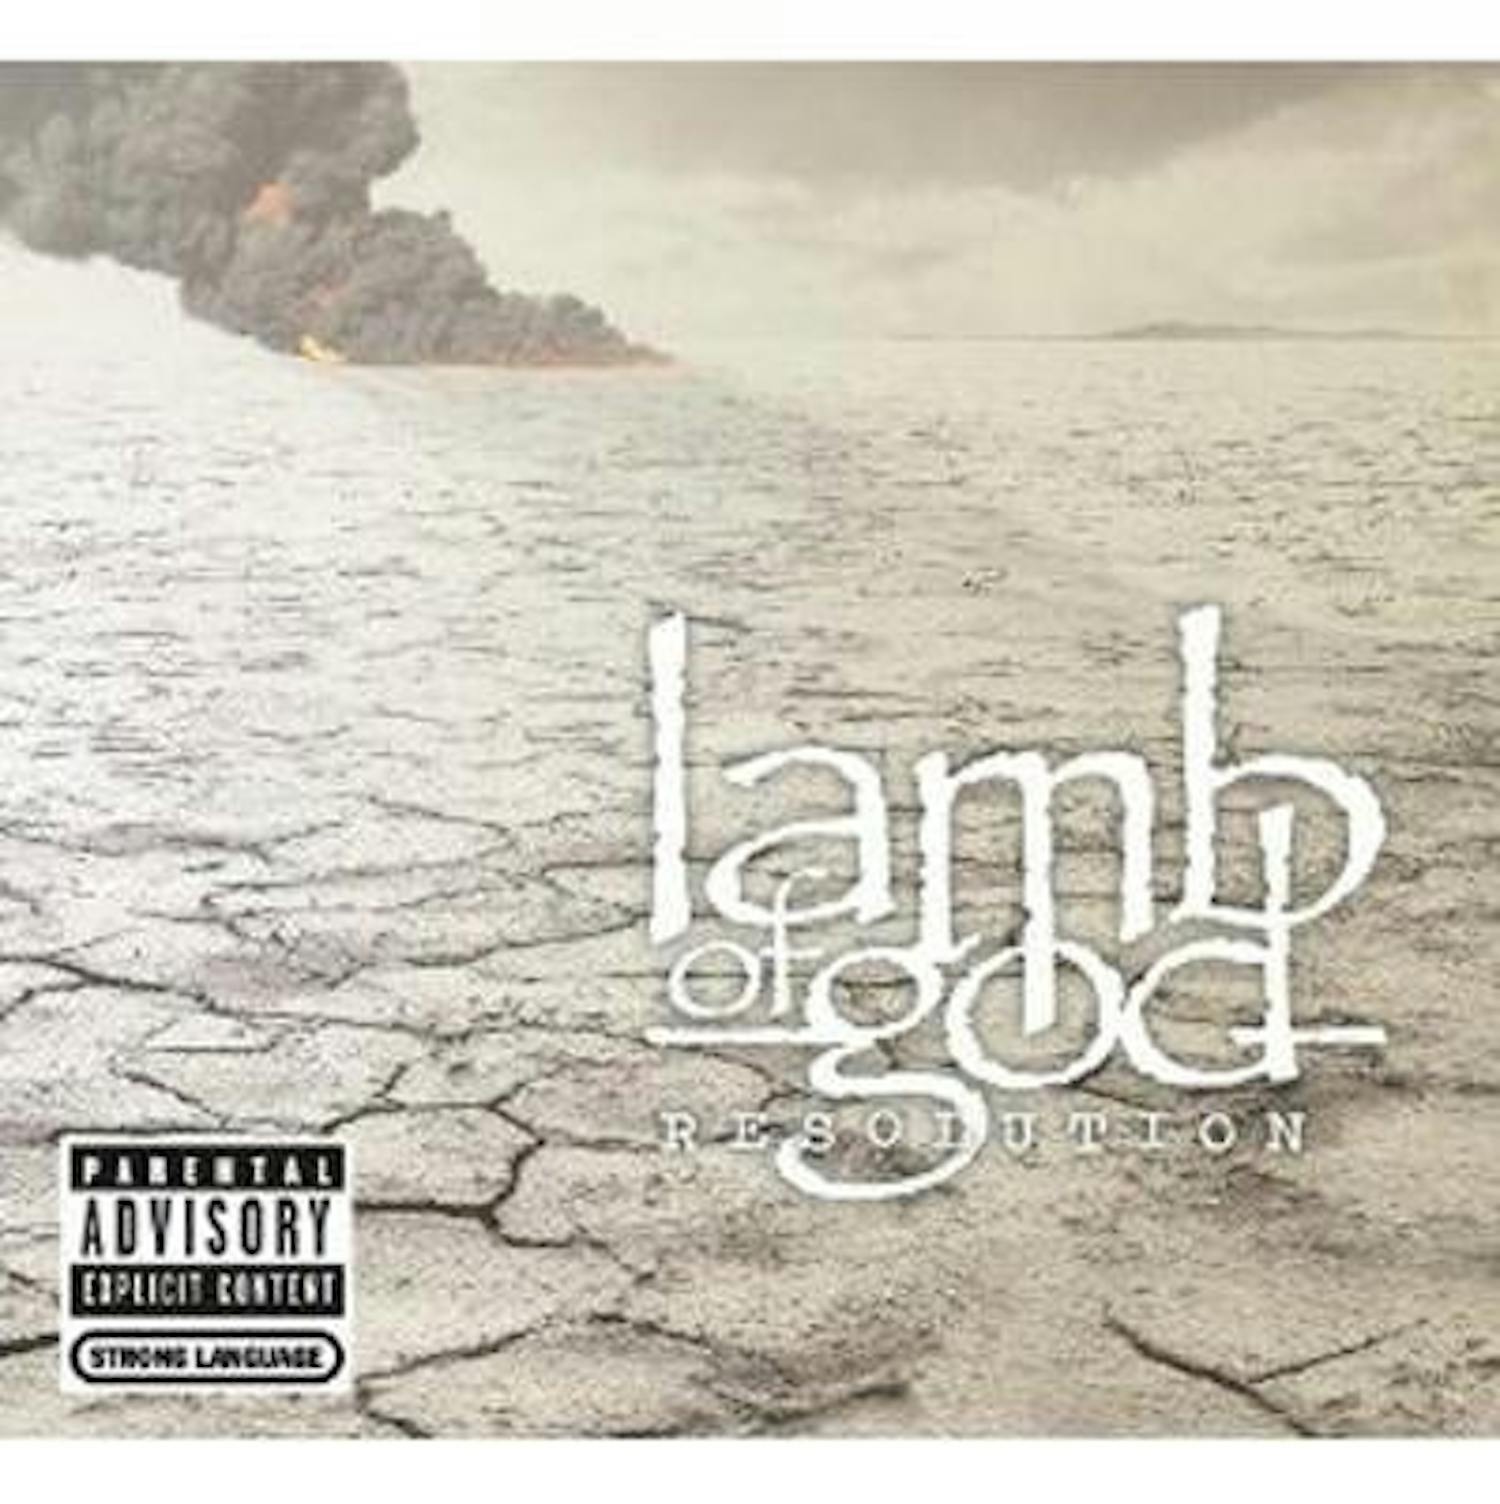 lamb of god